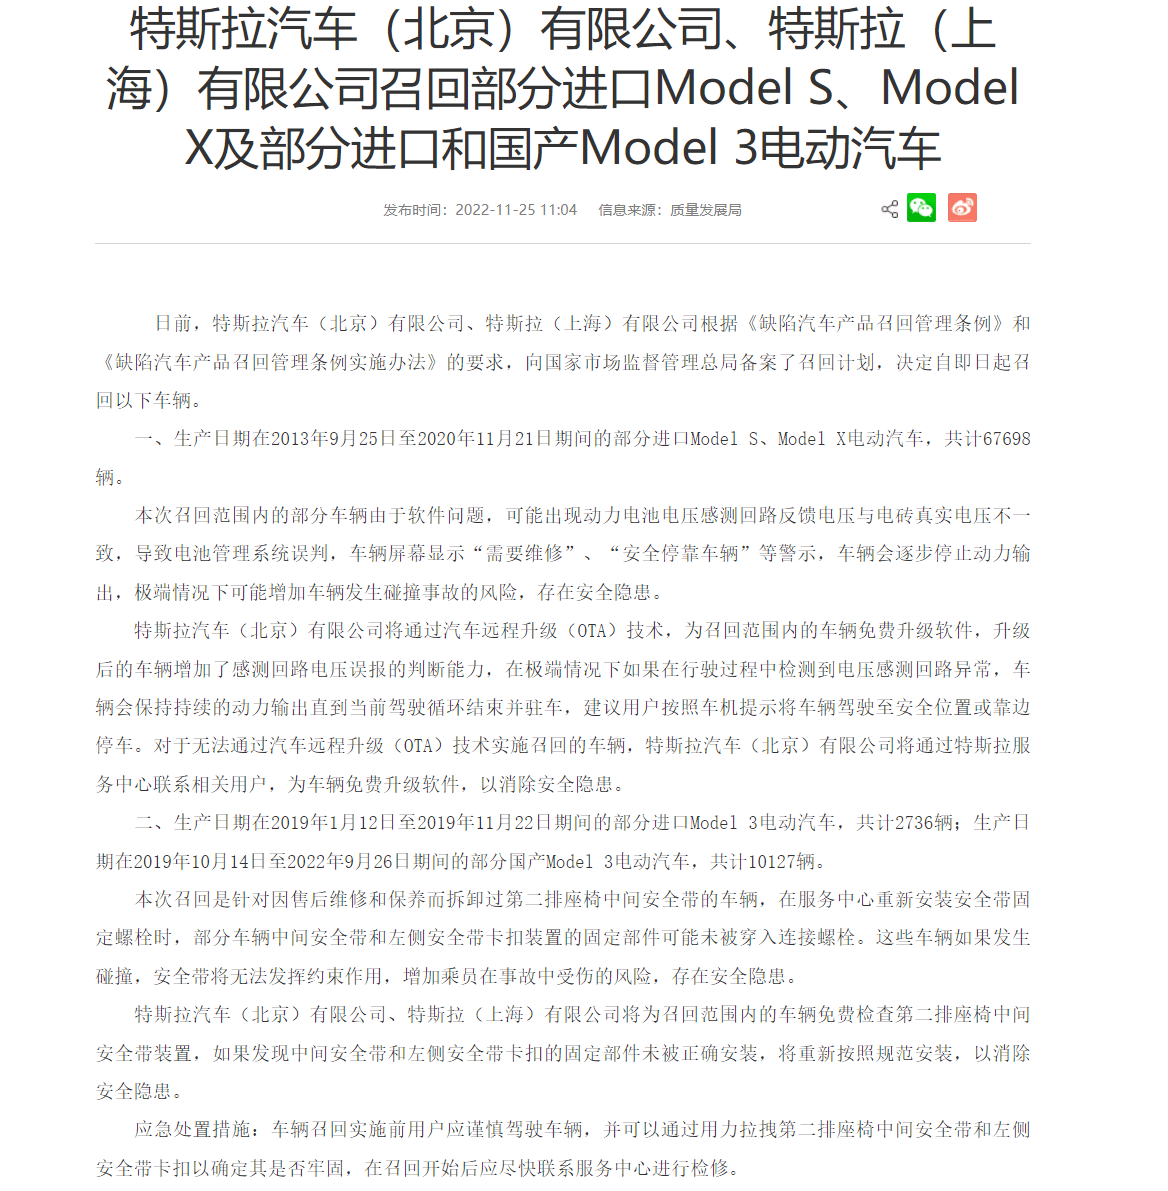 特斯拉汽车（北京）有限公司、特斯拉（上海）有限公司将召回部分进口Model S、Model X及部分进口和国产Model 3电动汽车，共计80561辆。